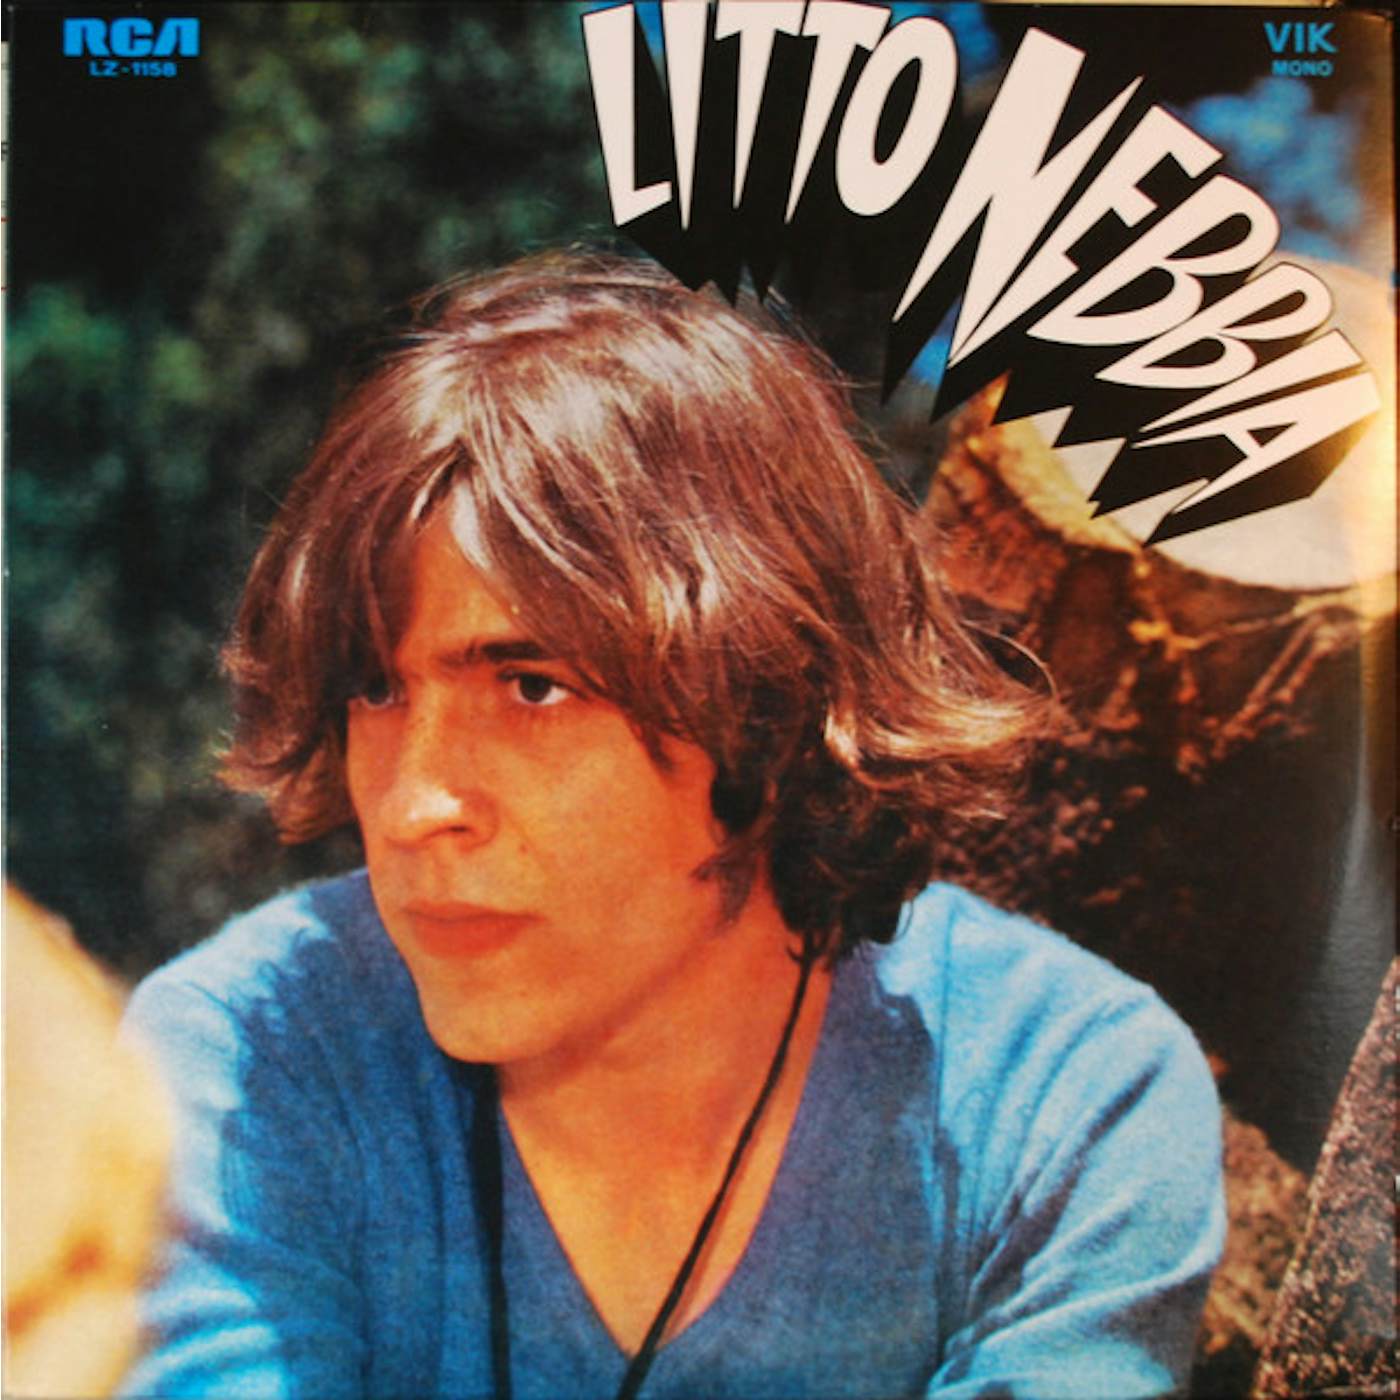 Litto Nebbiam Litto Nebbia Vinyl Record